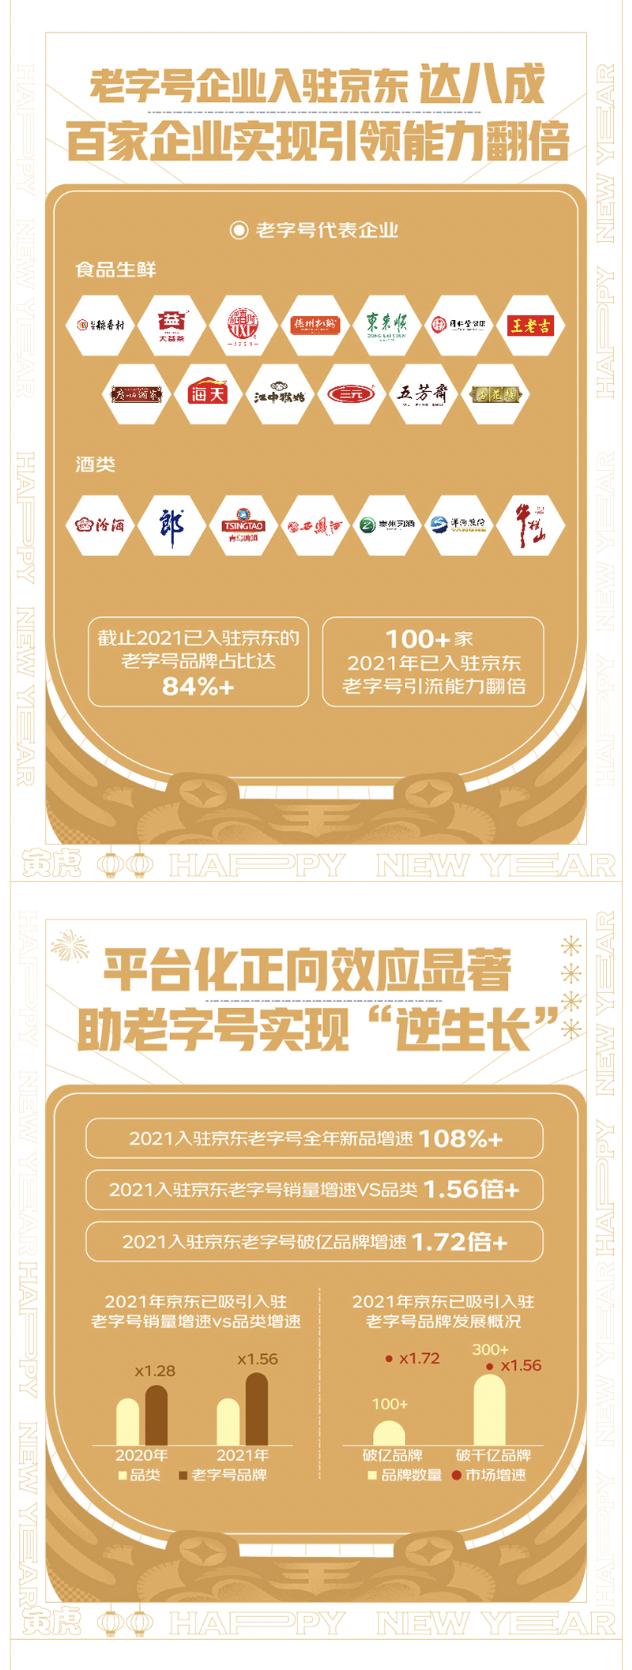 京东超市发布“2021中国十大老字号”榜单 稻香村、同仁堂、五粮液、泸州老窖上榜